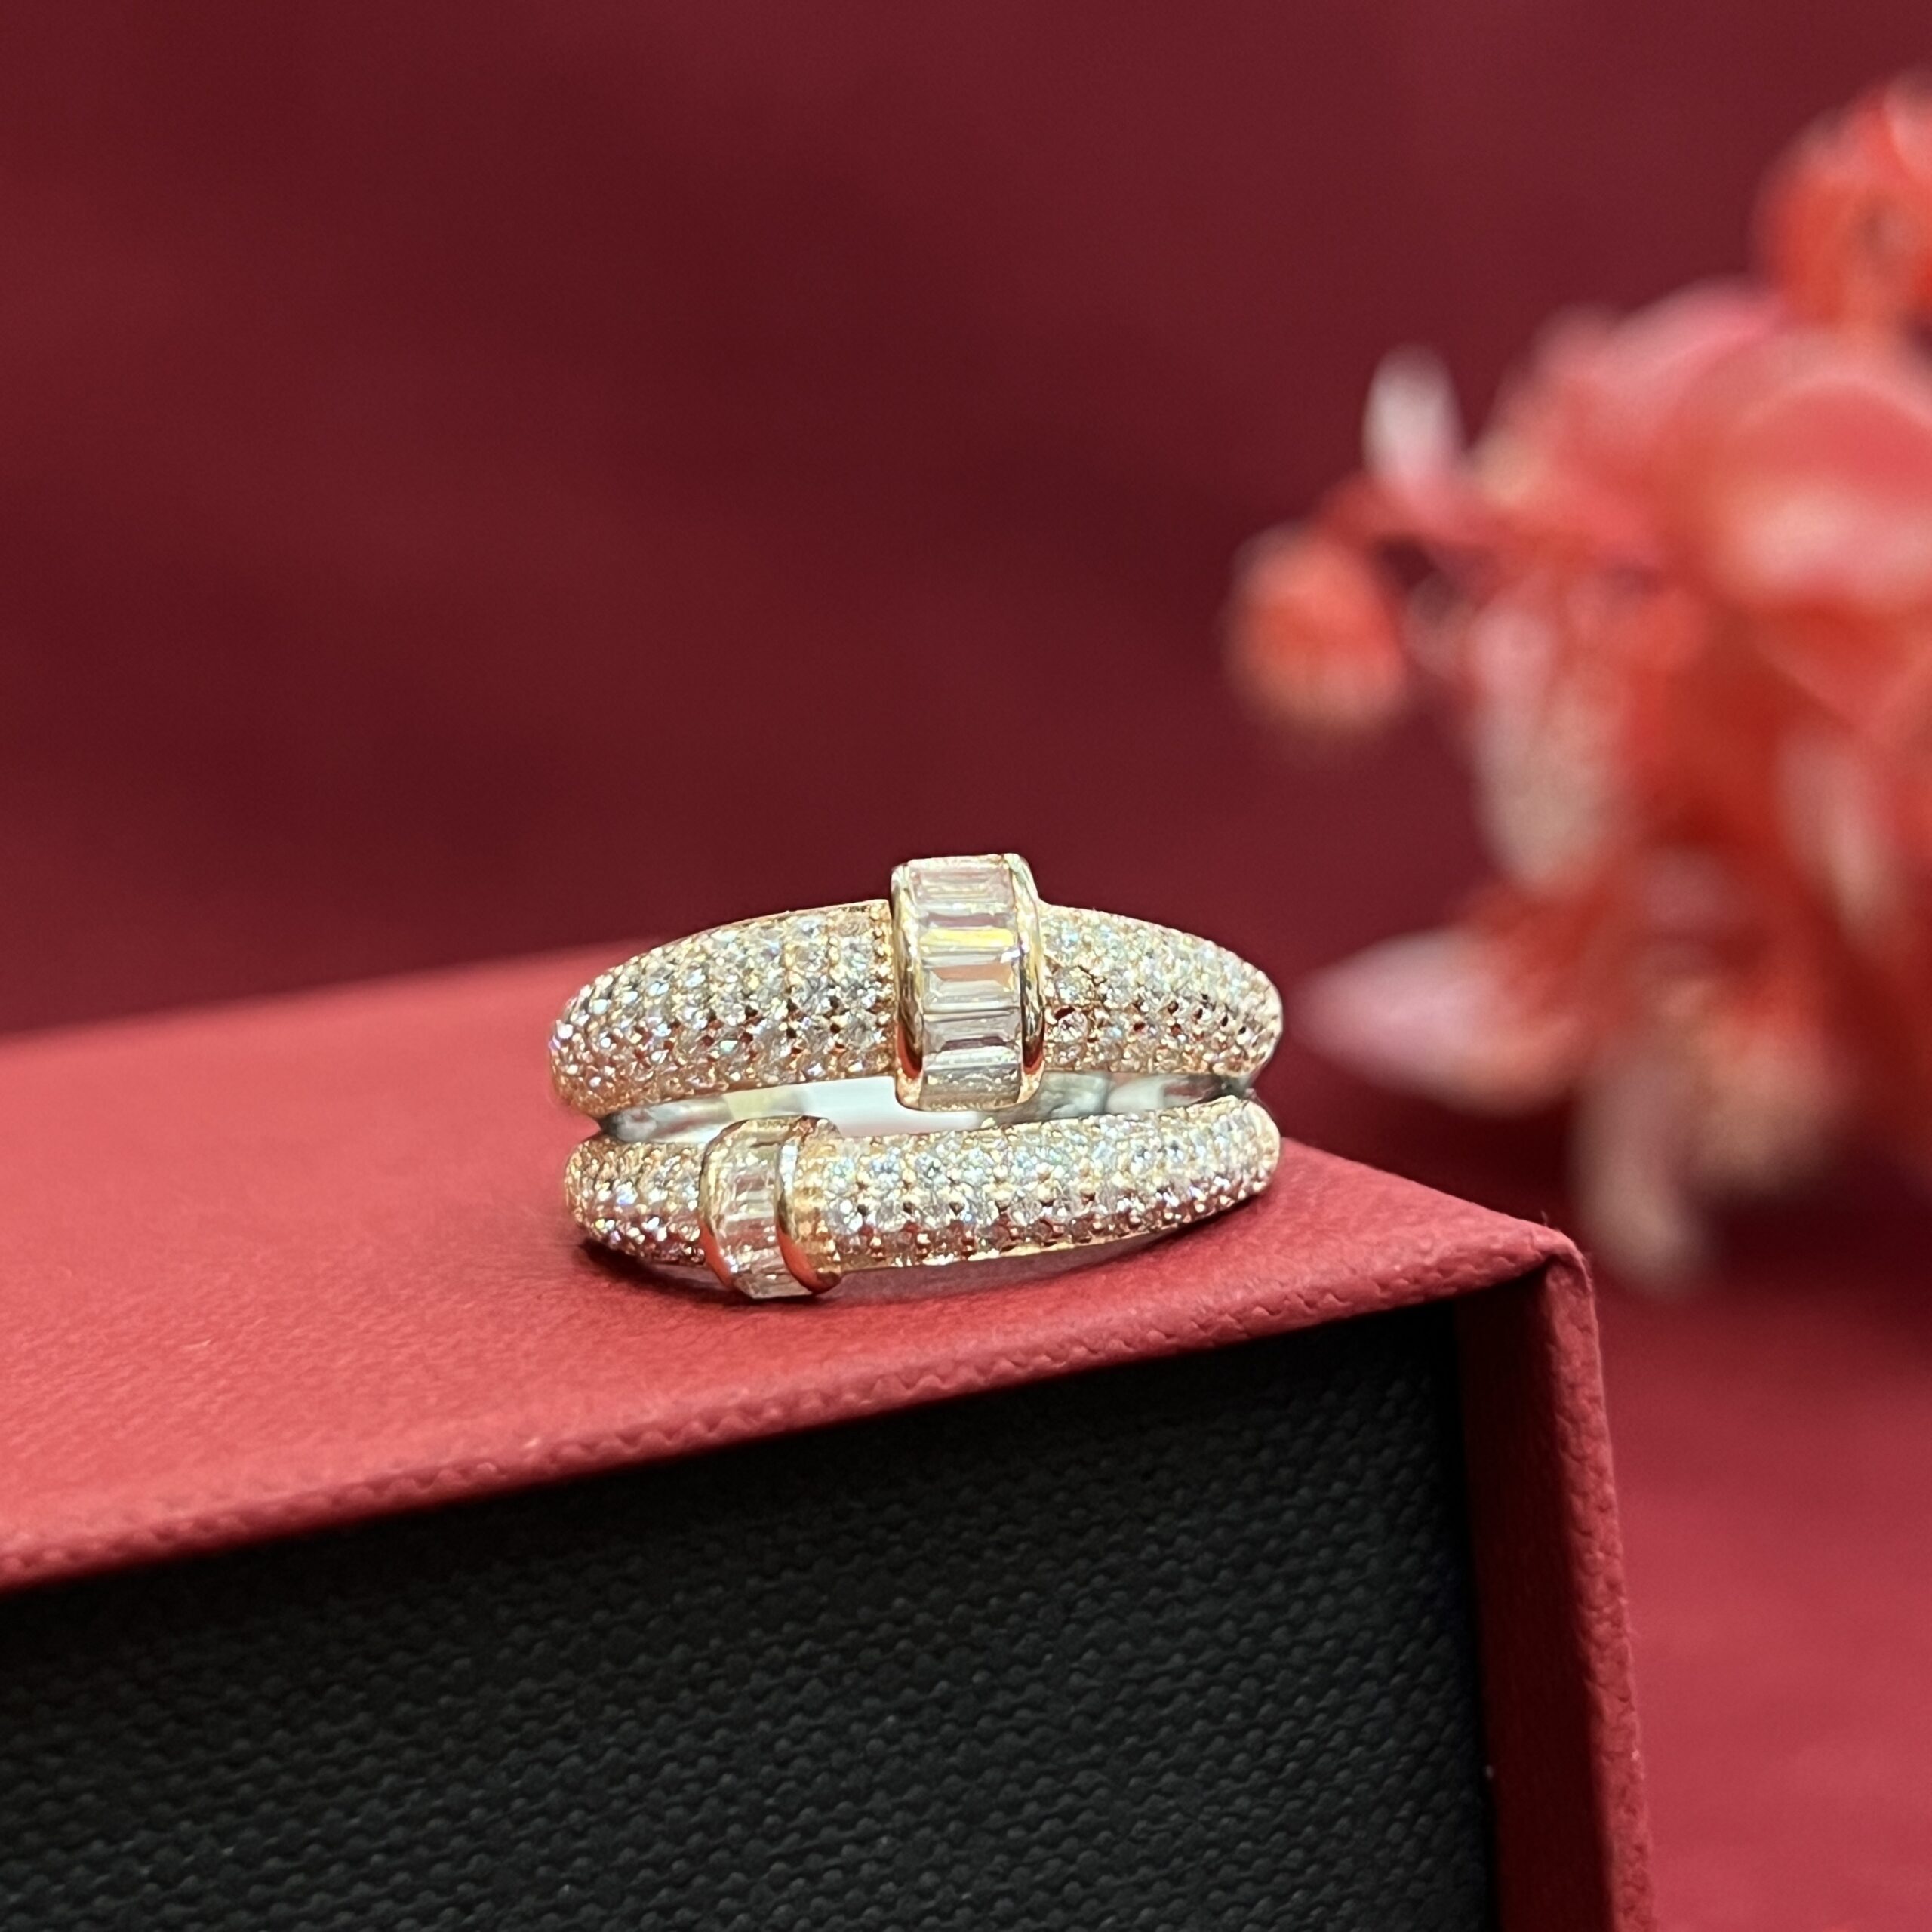 New gold ring designs for women 2021 || Latest gold finger ring design for  female - YouTube